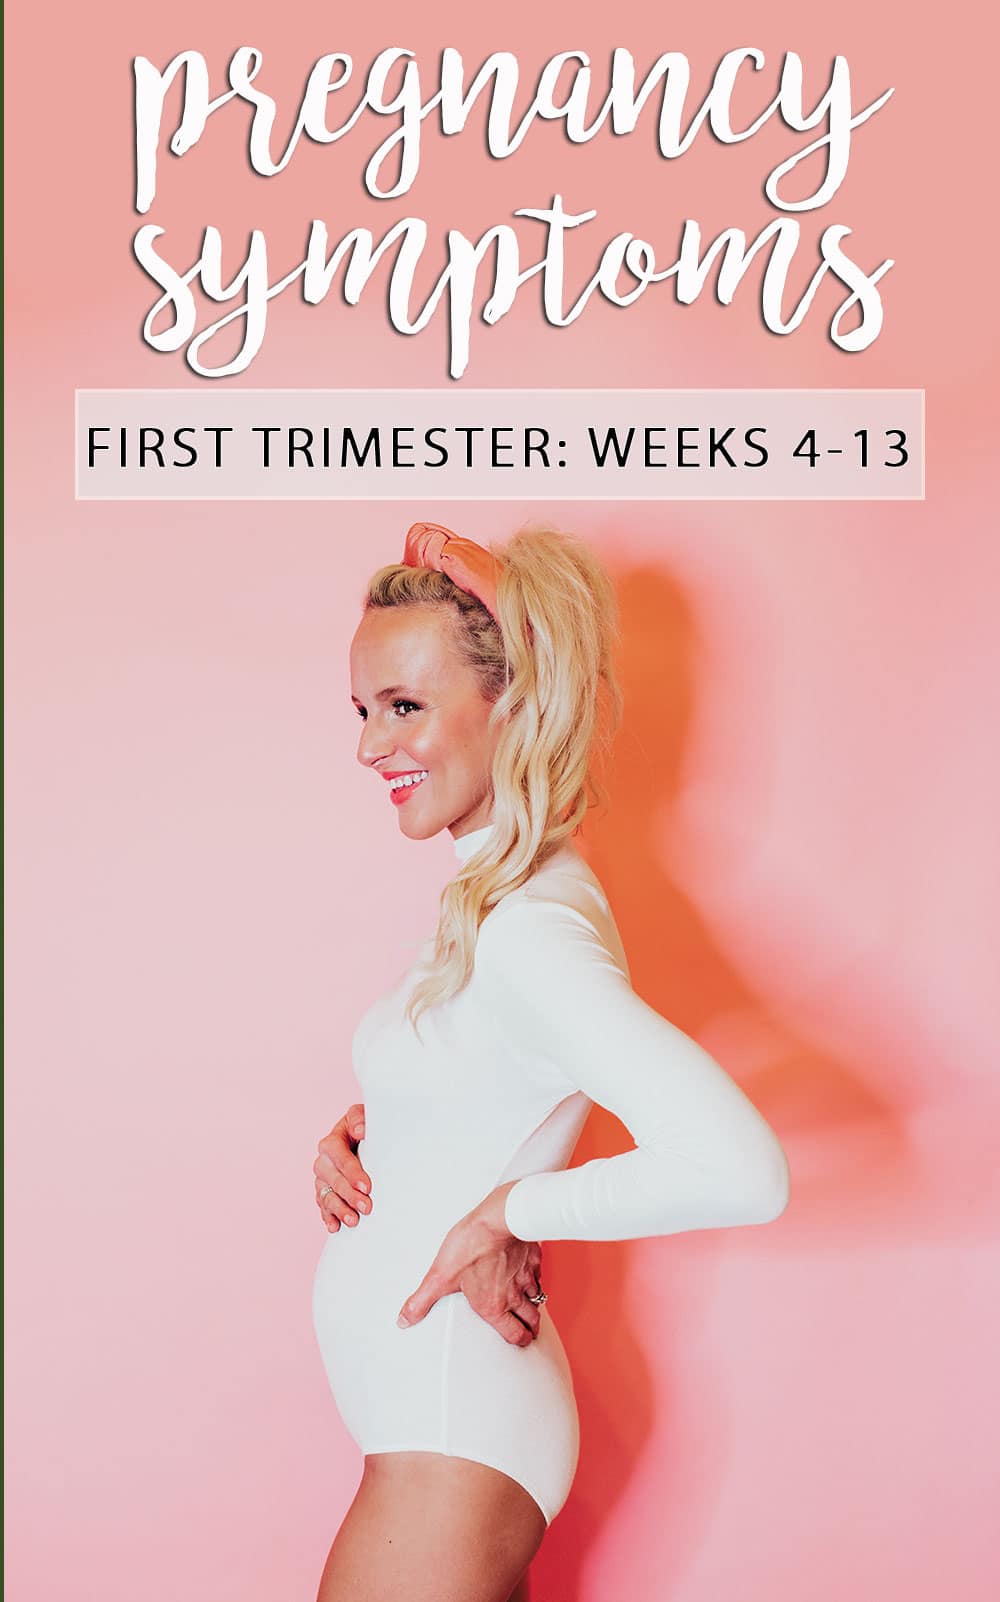 pregnancy symptoms by week - first trimester - weeks 4 - 13